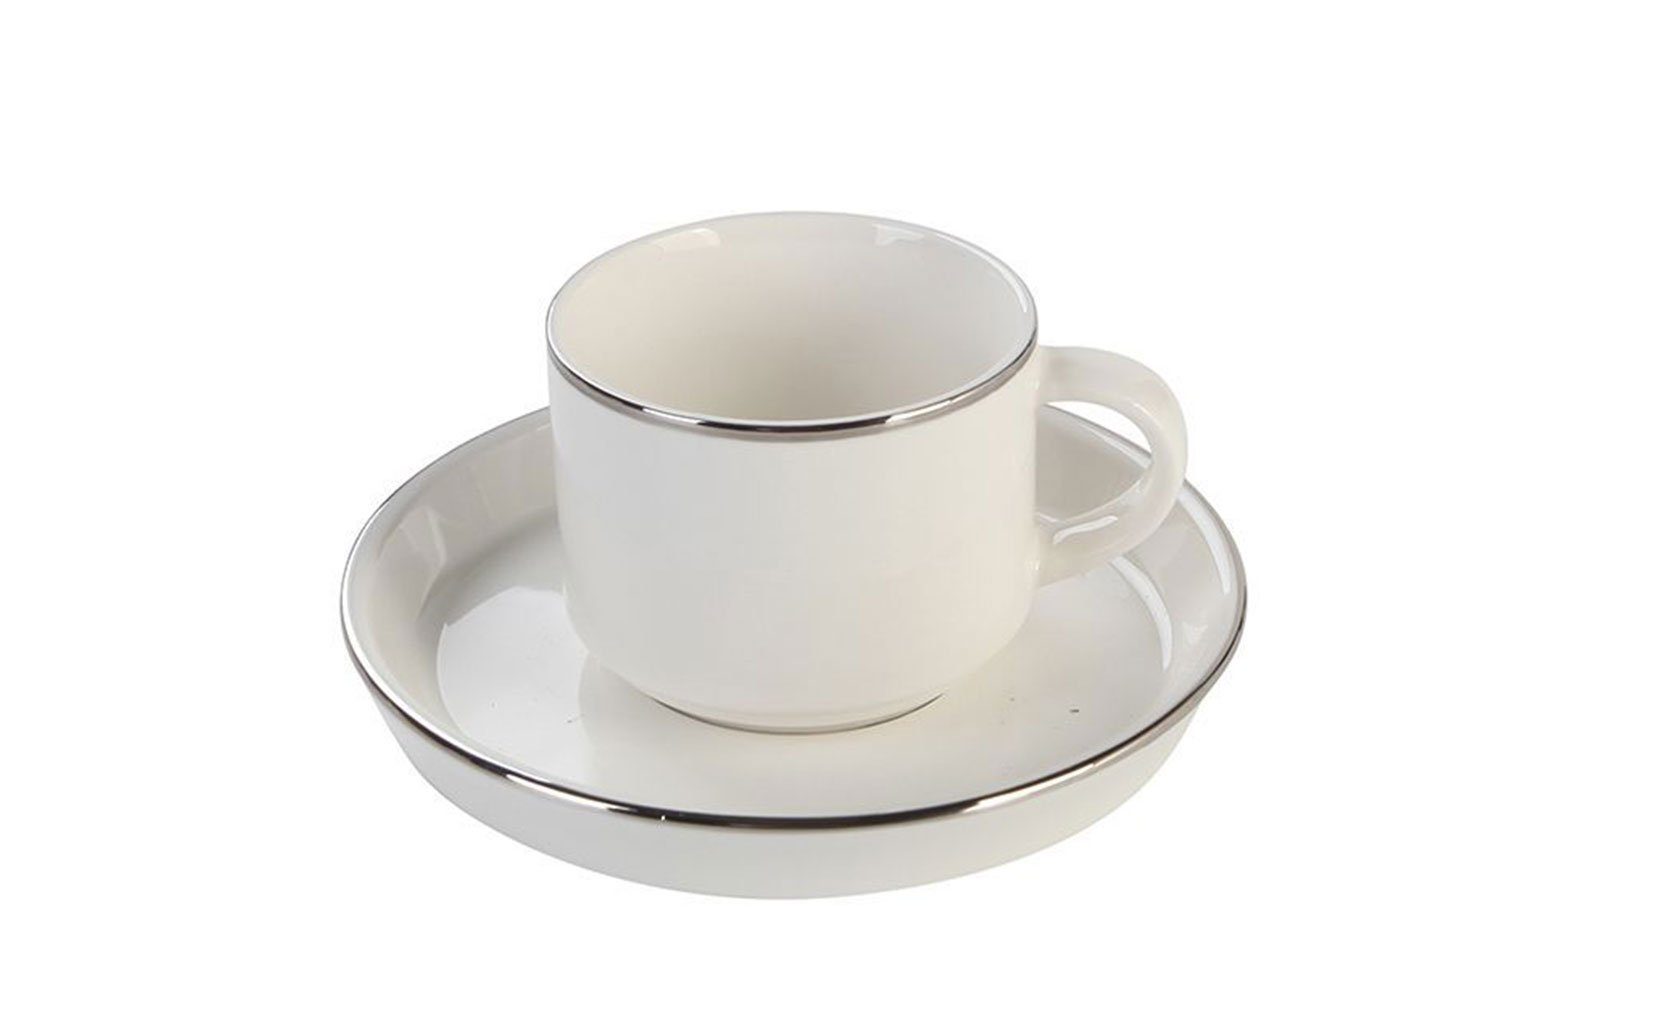 Özberk Espressotasse Lunel Silber, Porzellan, 12 Teiliges Espressotassen-Set für 6 Personen